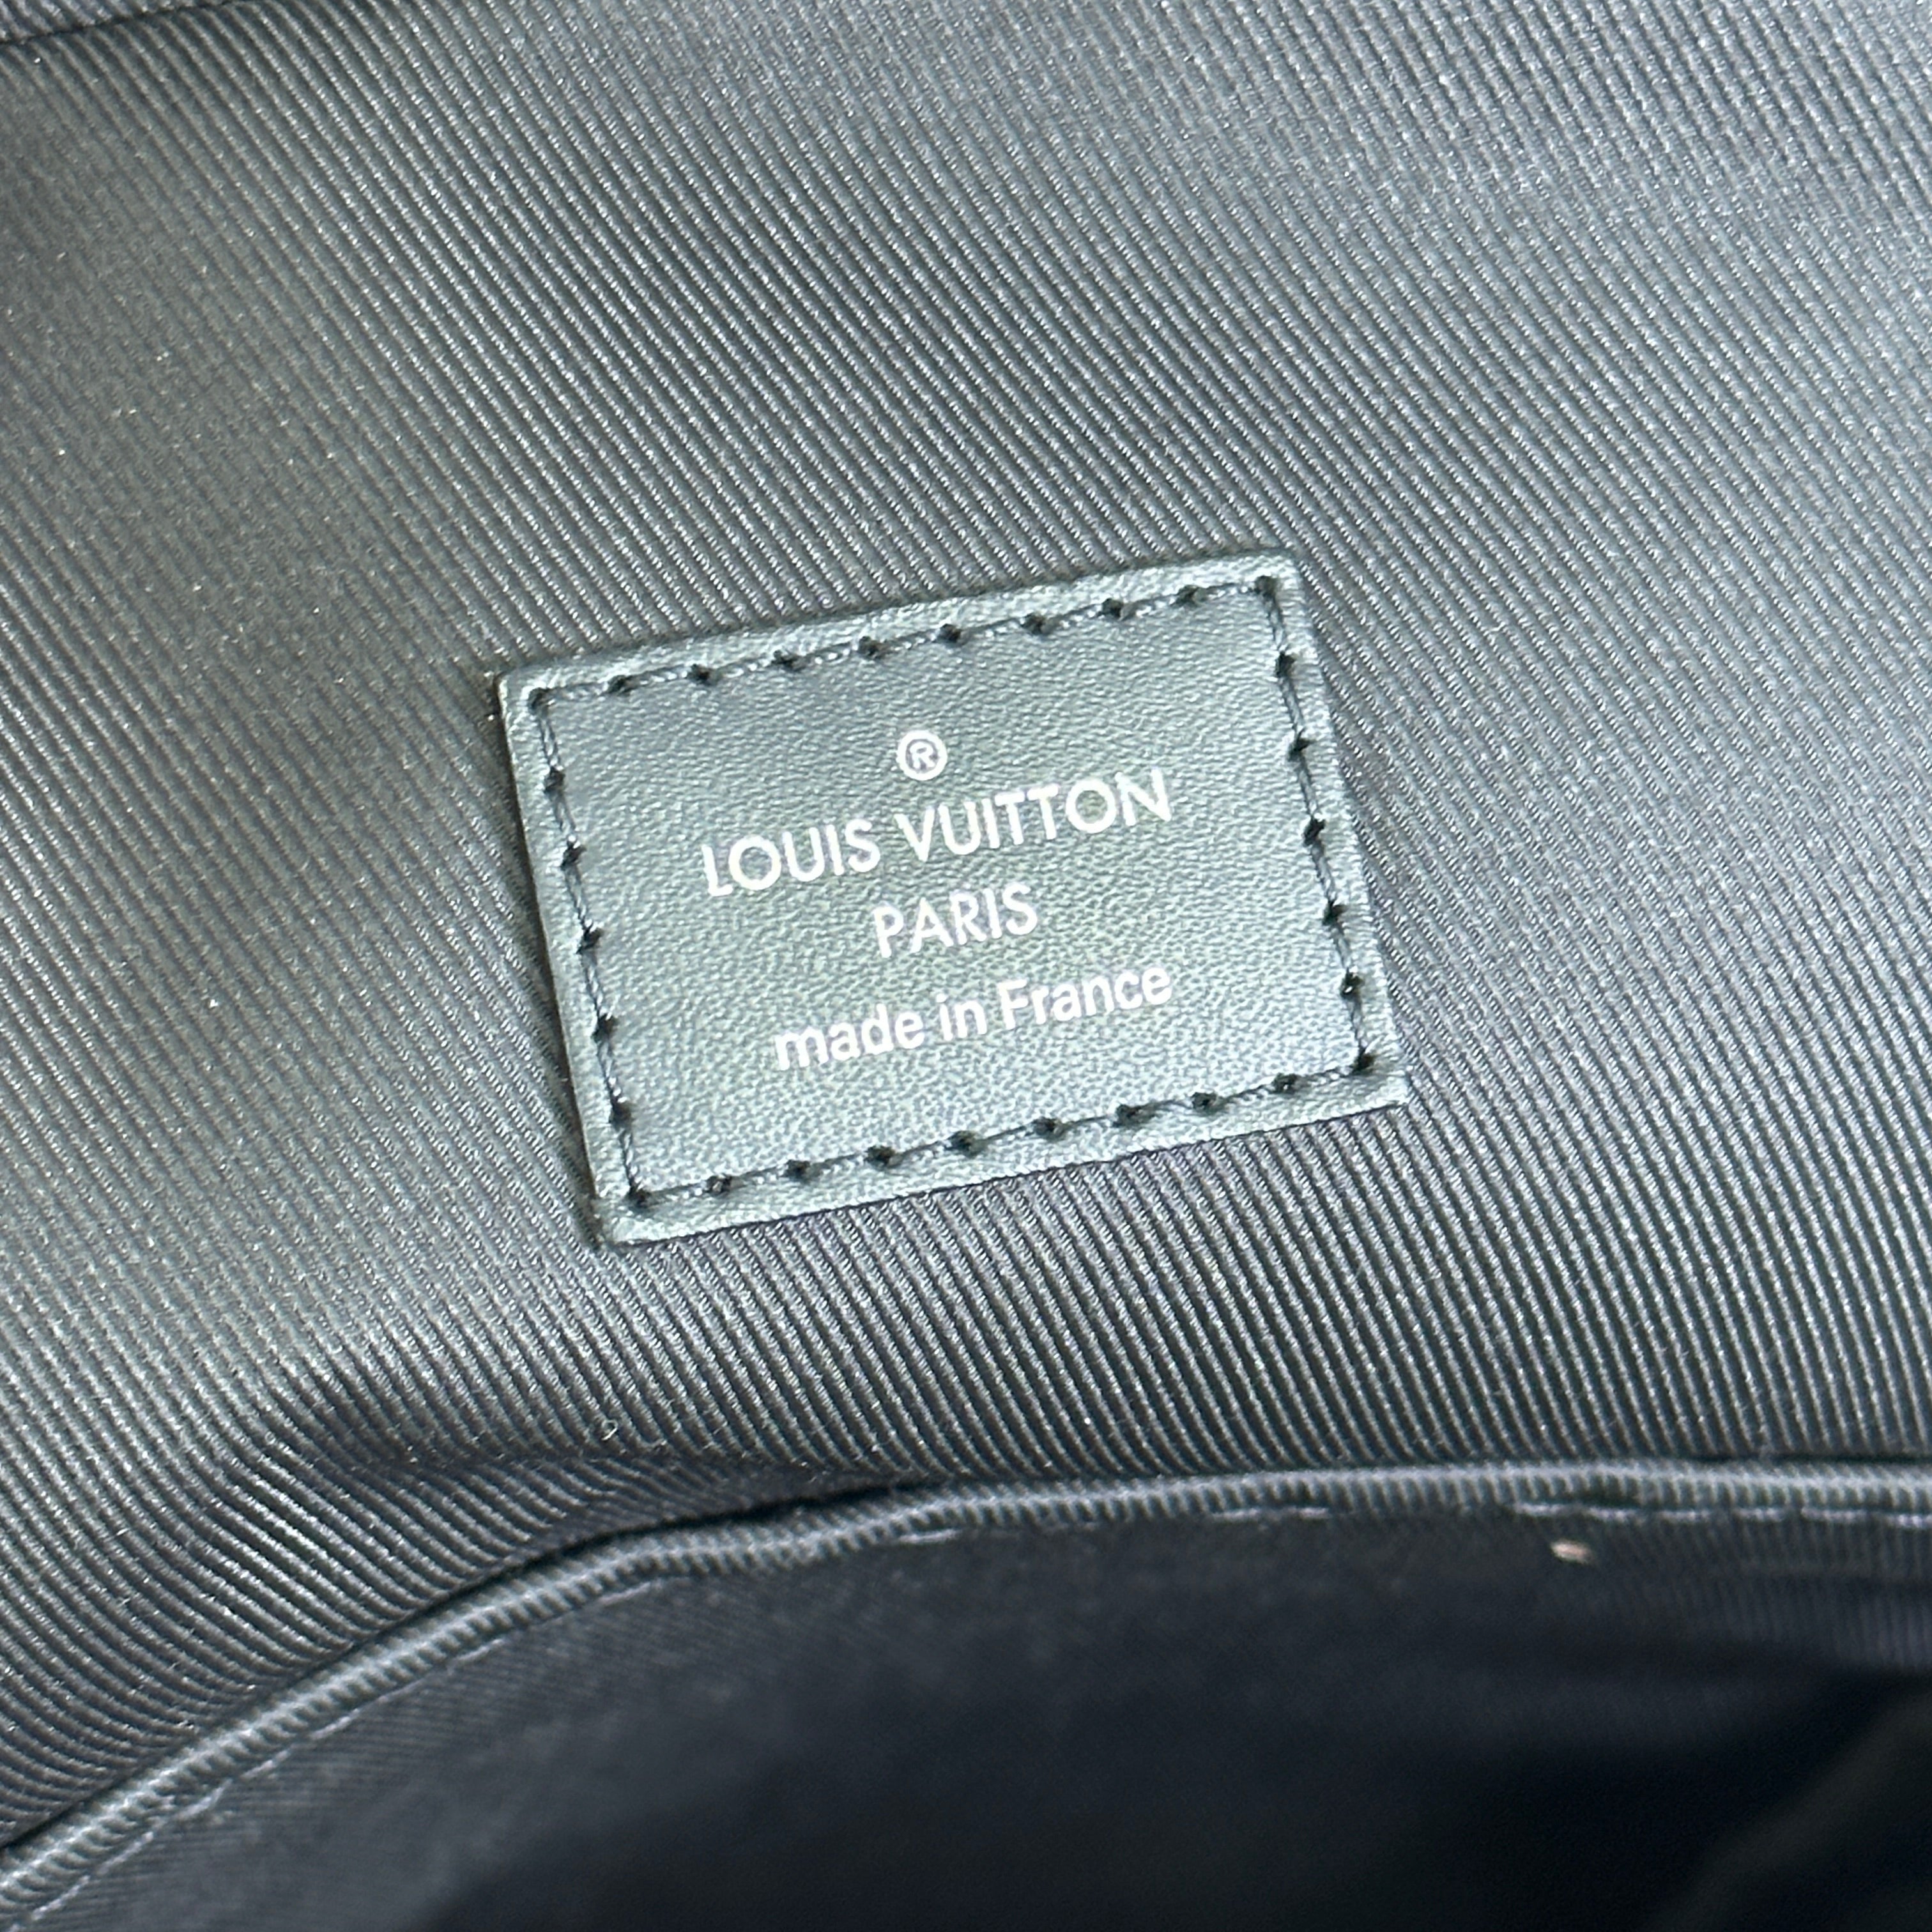 Louis Vuitton Pochettes for sale in Paris, France, Facebook Marketplace